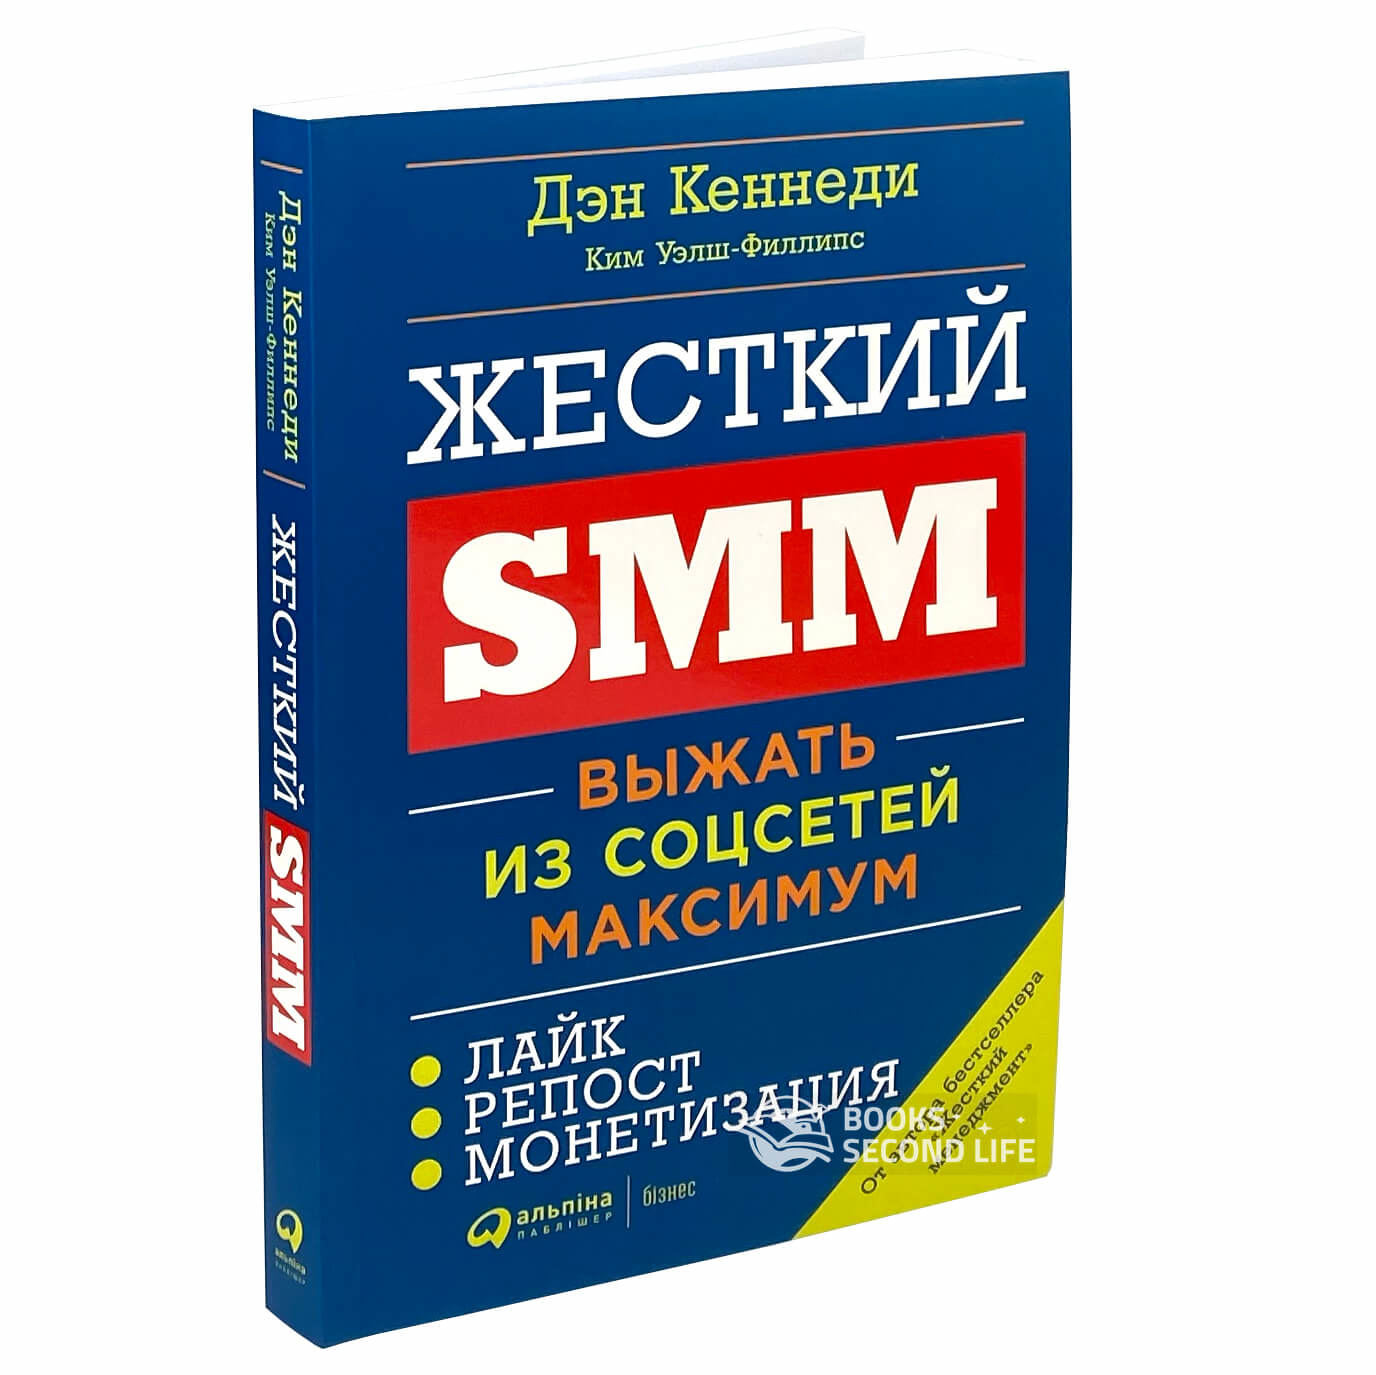 Жесткий SMM : Выжать из соц сетей максимум. Автор — Ким Уэлш-Филлипс, Кеннеди Дэн. 